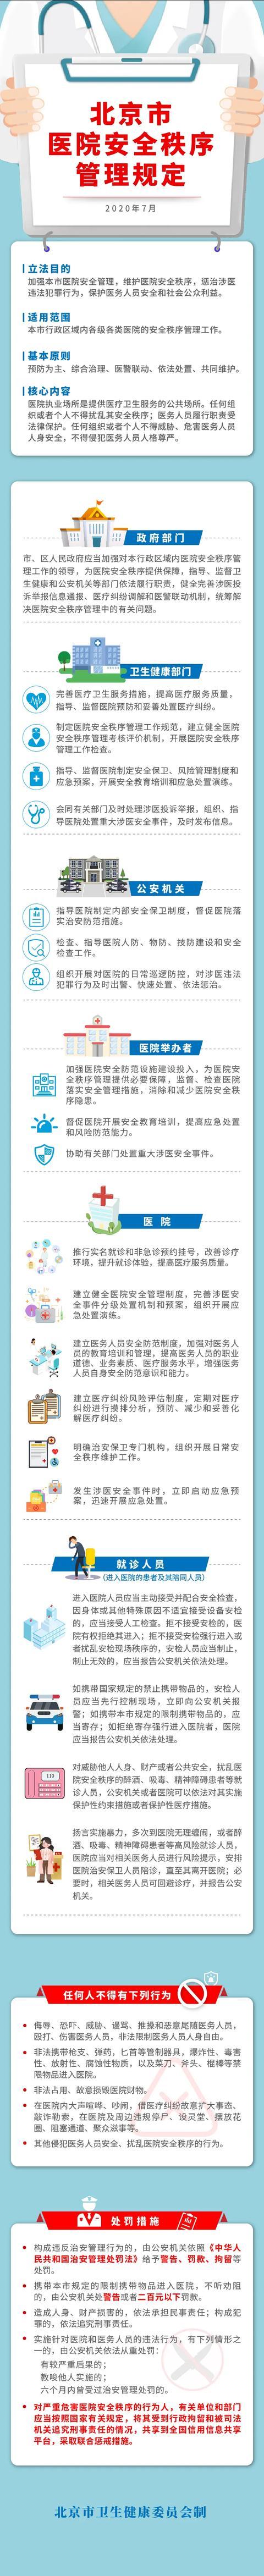 北京今起实施医院安全秩序管理规定